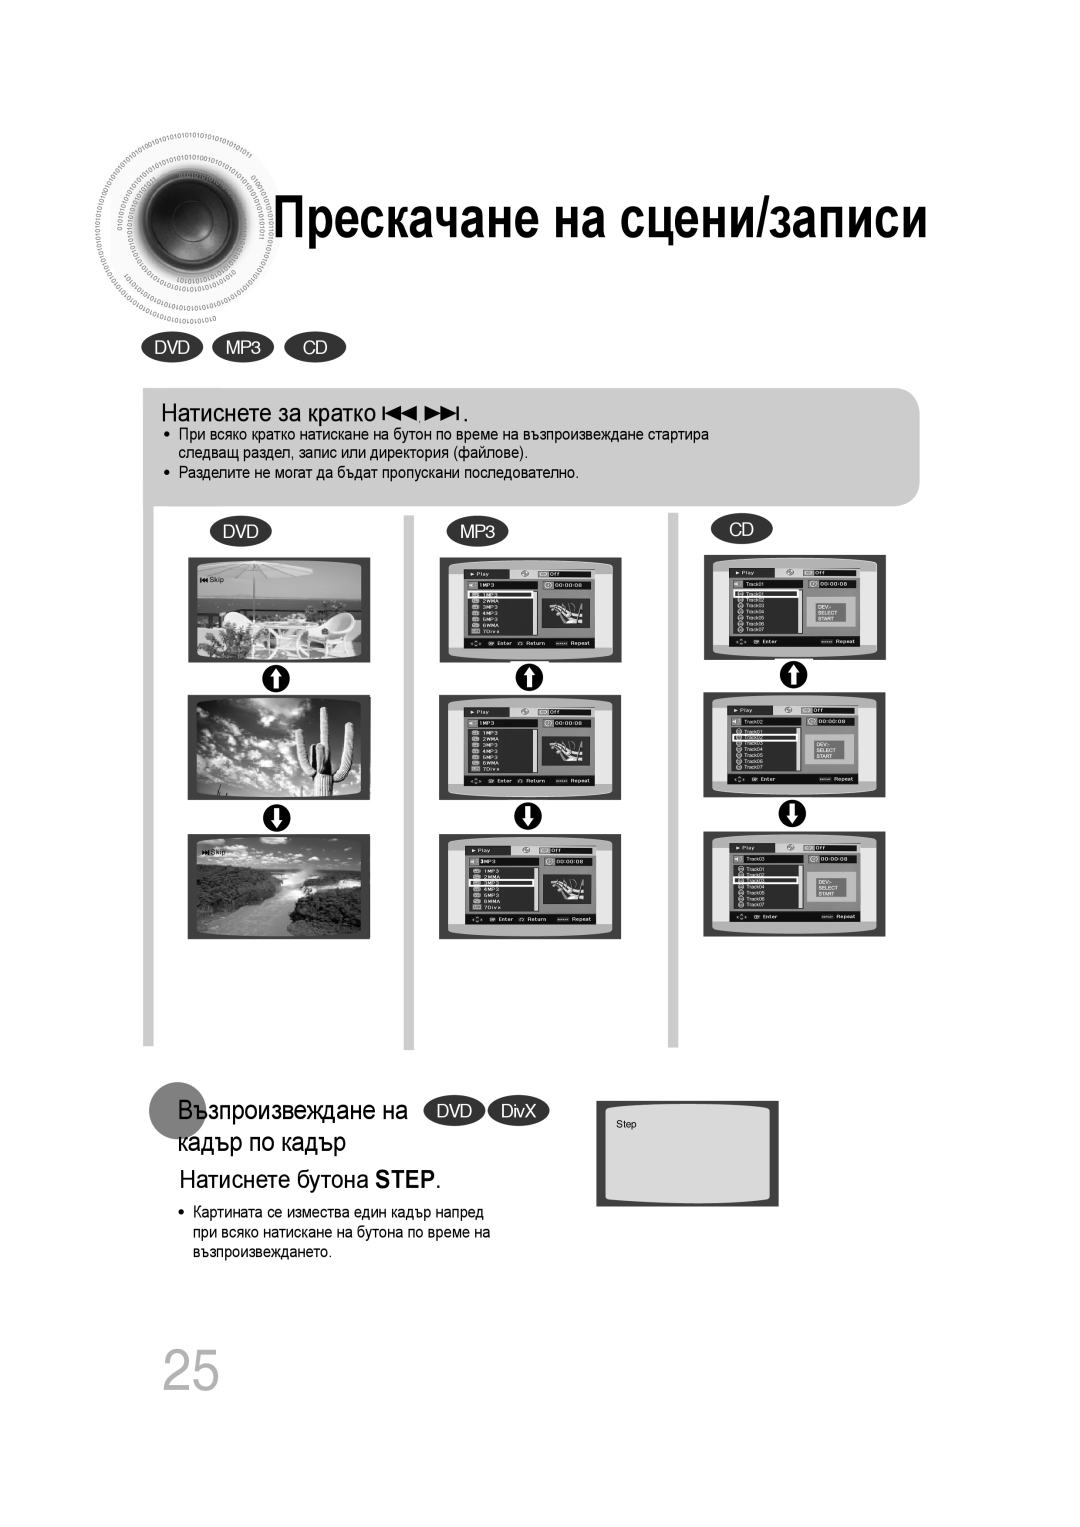 Samsung MM-C330D/EDC manual Прескачане на сцени/записи, Възпроизвеждане на DVD DivX кадър по кадър, Натиснете бутона STEP 